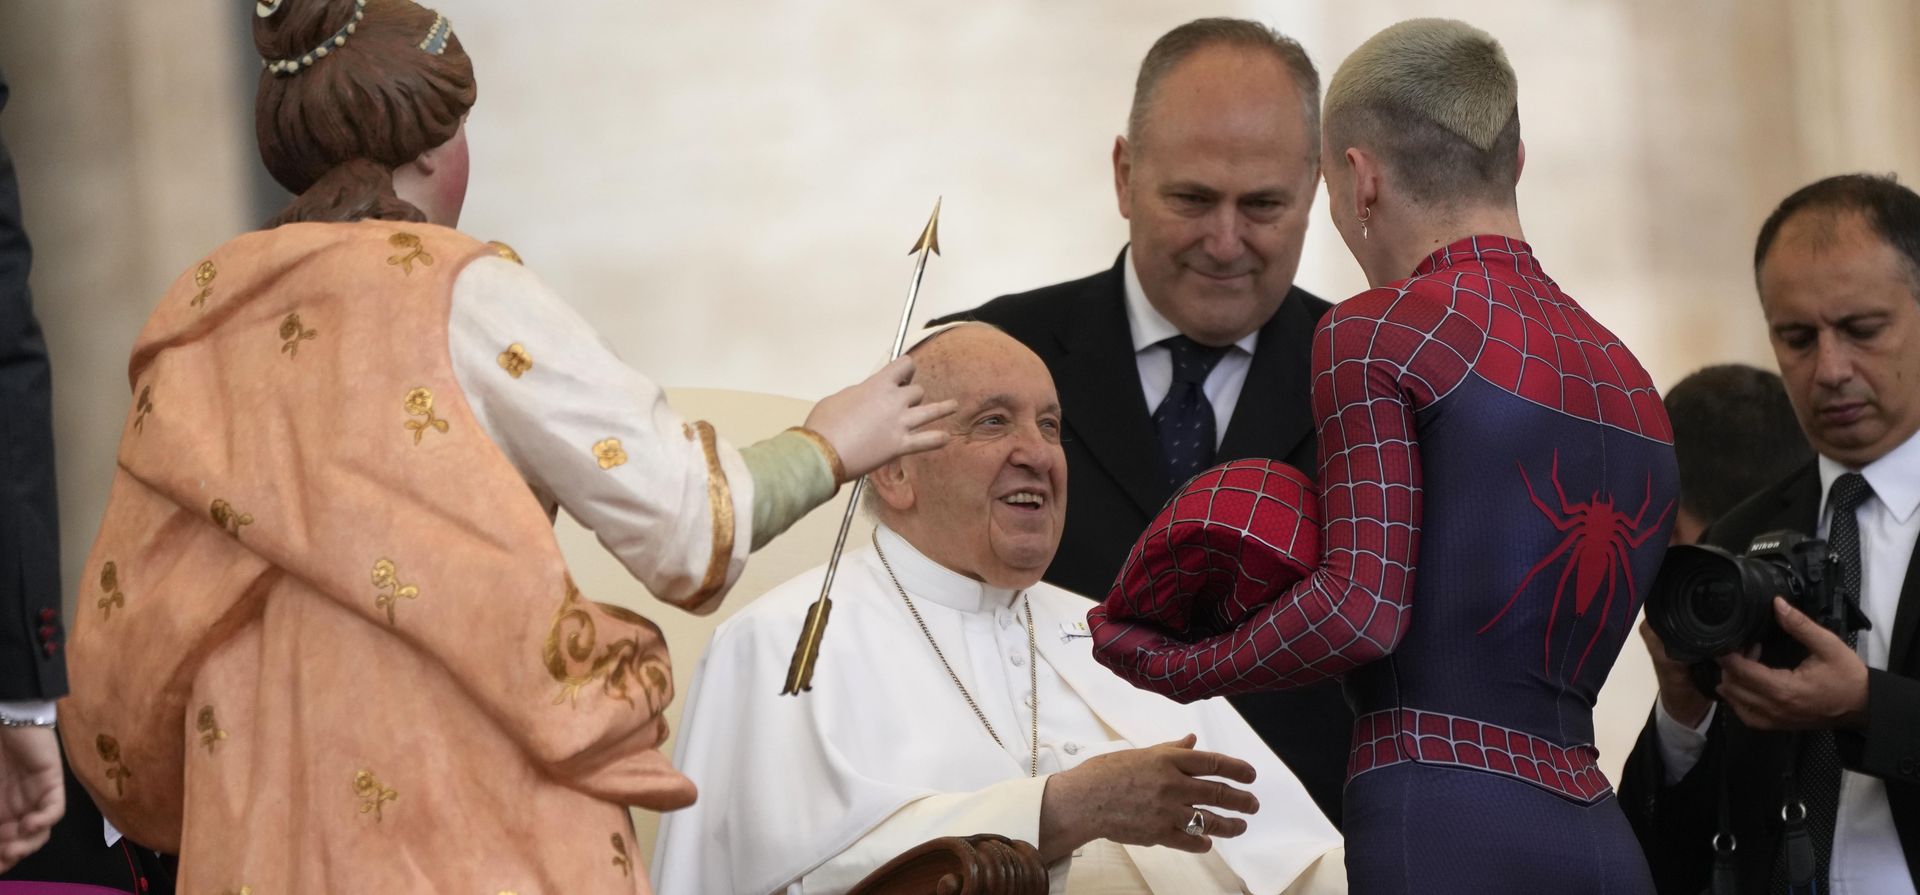 El Papa Francisco saluda a Francesco Tarantino, un voluntario en hospitales pediátricos, disfrazado de Spiderman, durante su audiencia general semanal en la Plaza de San Pedro en el Vaticano, el miércoles 10 de mayo de 2023. (Foto AP/Alessandra Tarantino)